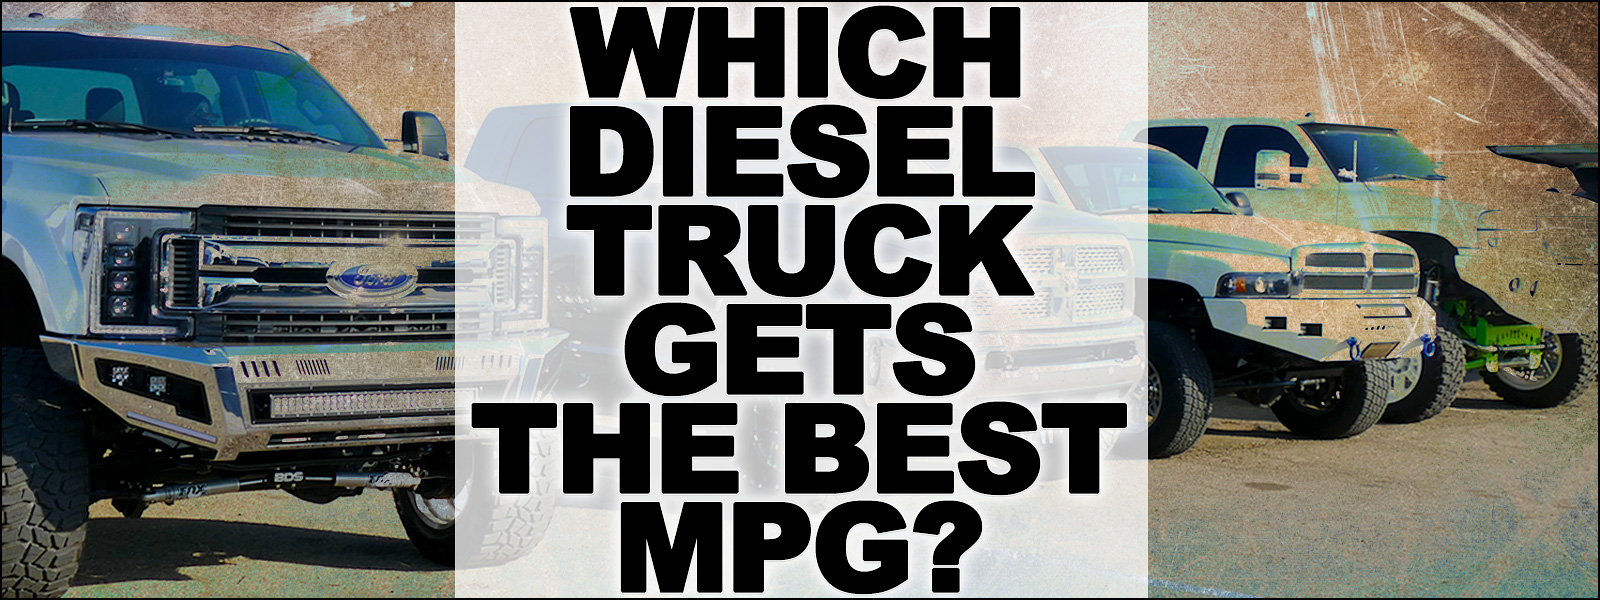 Which Diesel Truck Gets The Best MPG?